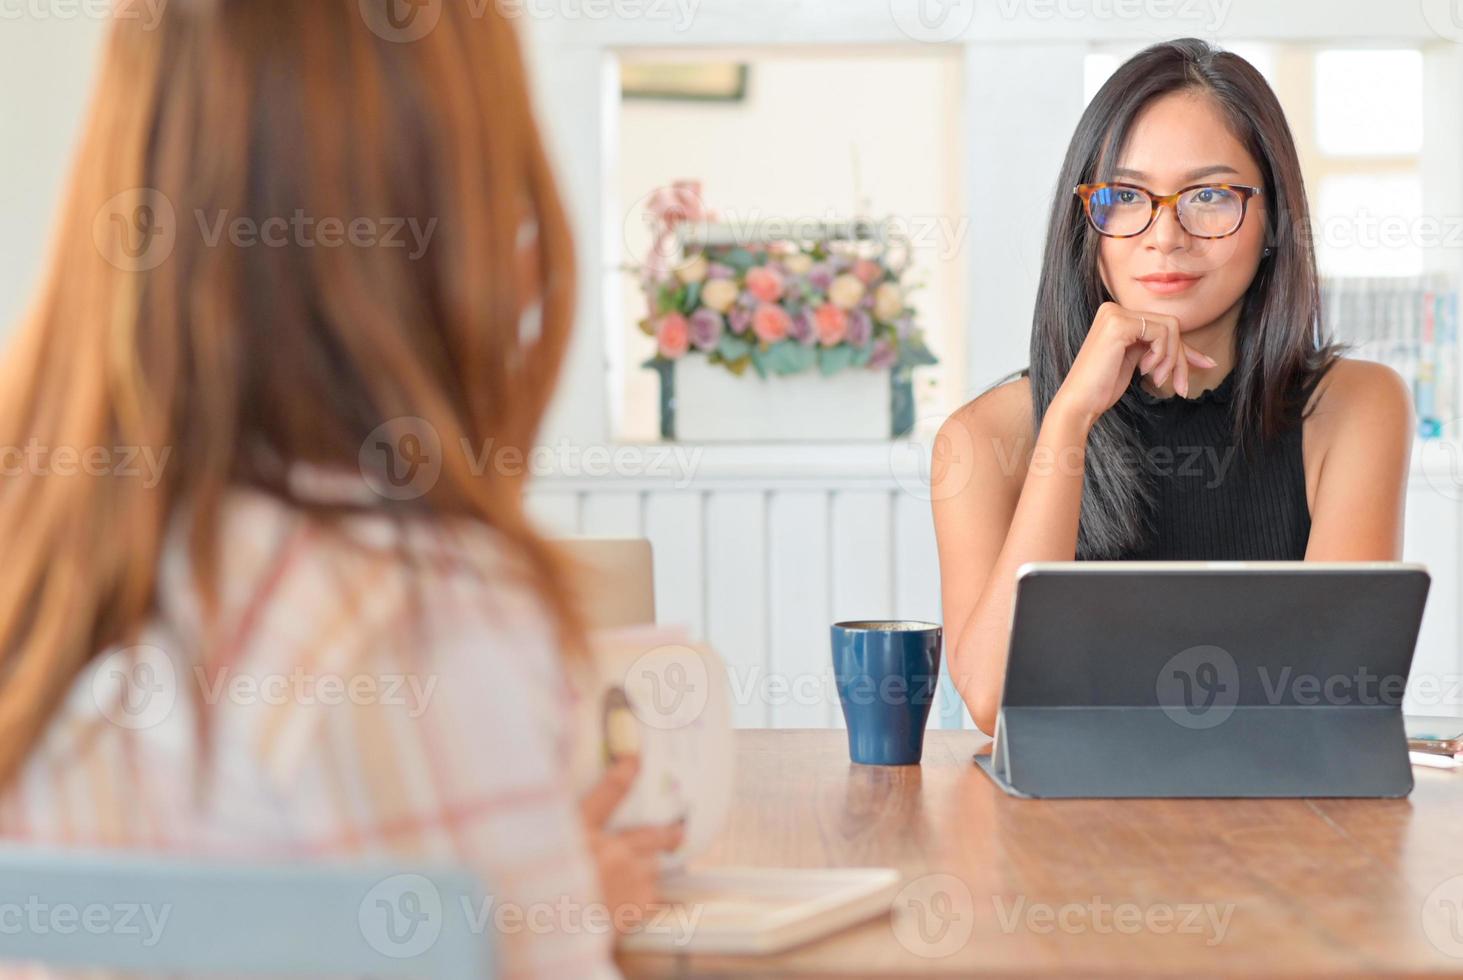 due giovani donne che parlano insieme a un tablet in soggiorno. si siedono distanziati per prevenire il virus. foto